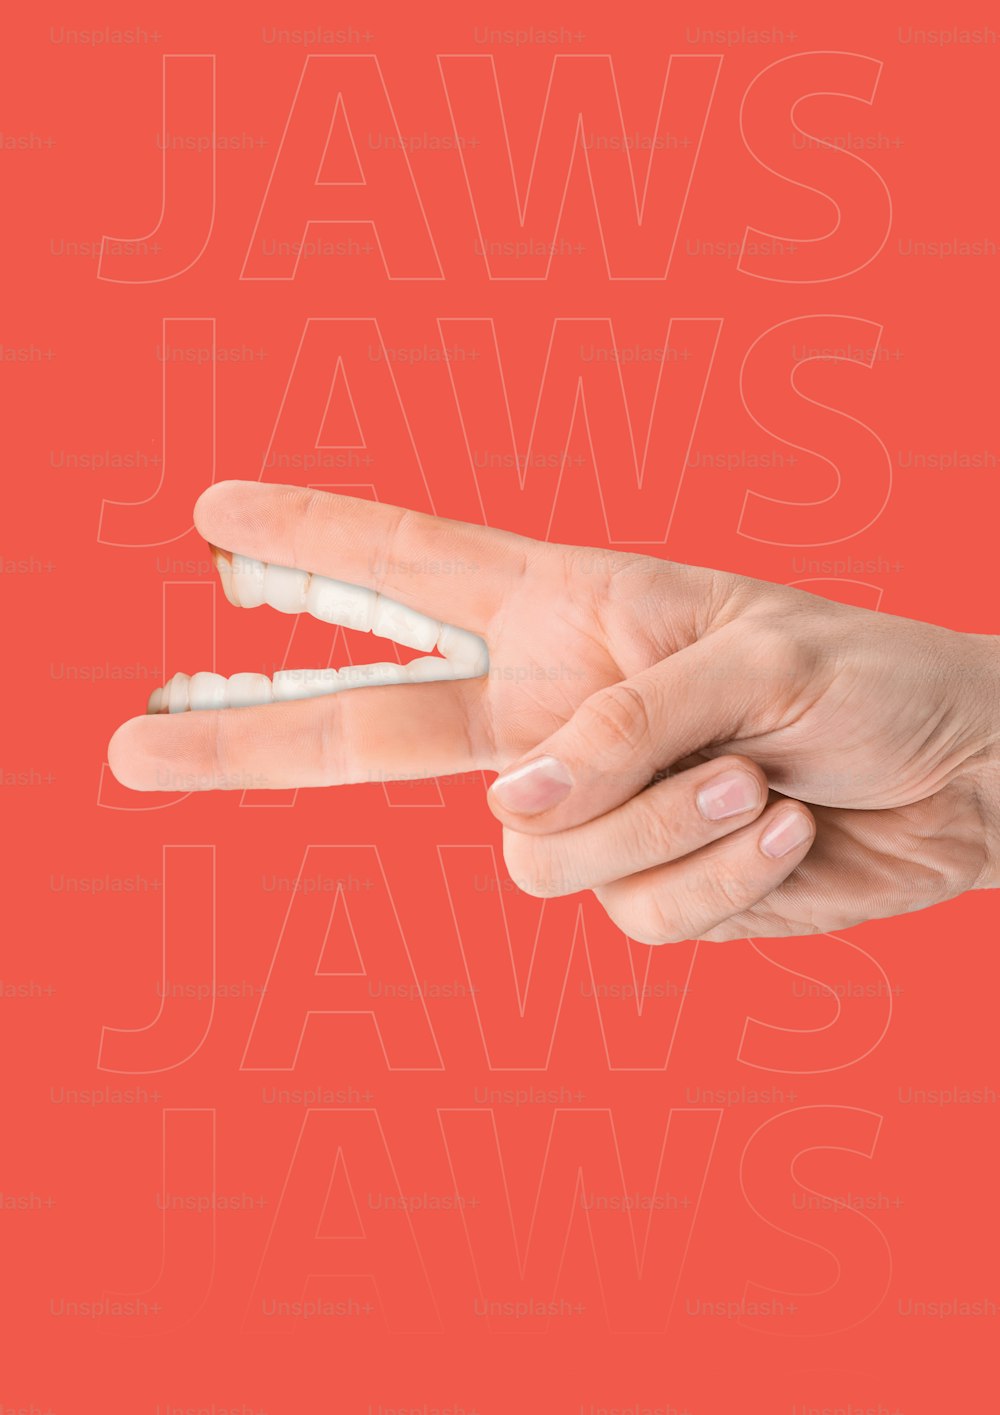 폭력적인 갈등 또는 평화 협정. 하얀 인간의 이빨을 가진 남성의 손은 빨간 배경에 손가락을 대고 있다. 현대적인 디자인. 현대 미술 콜라주. 경제 또는 인간 관계 또는 정치의 개념.